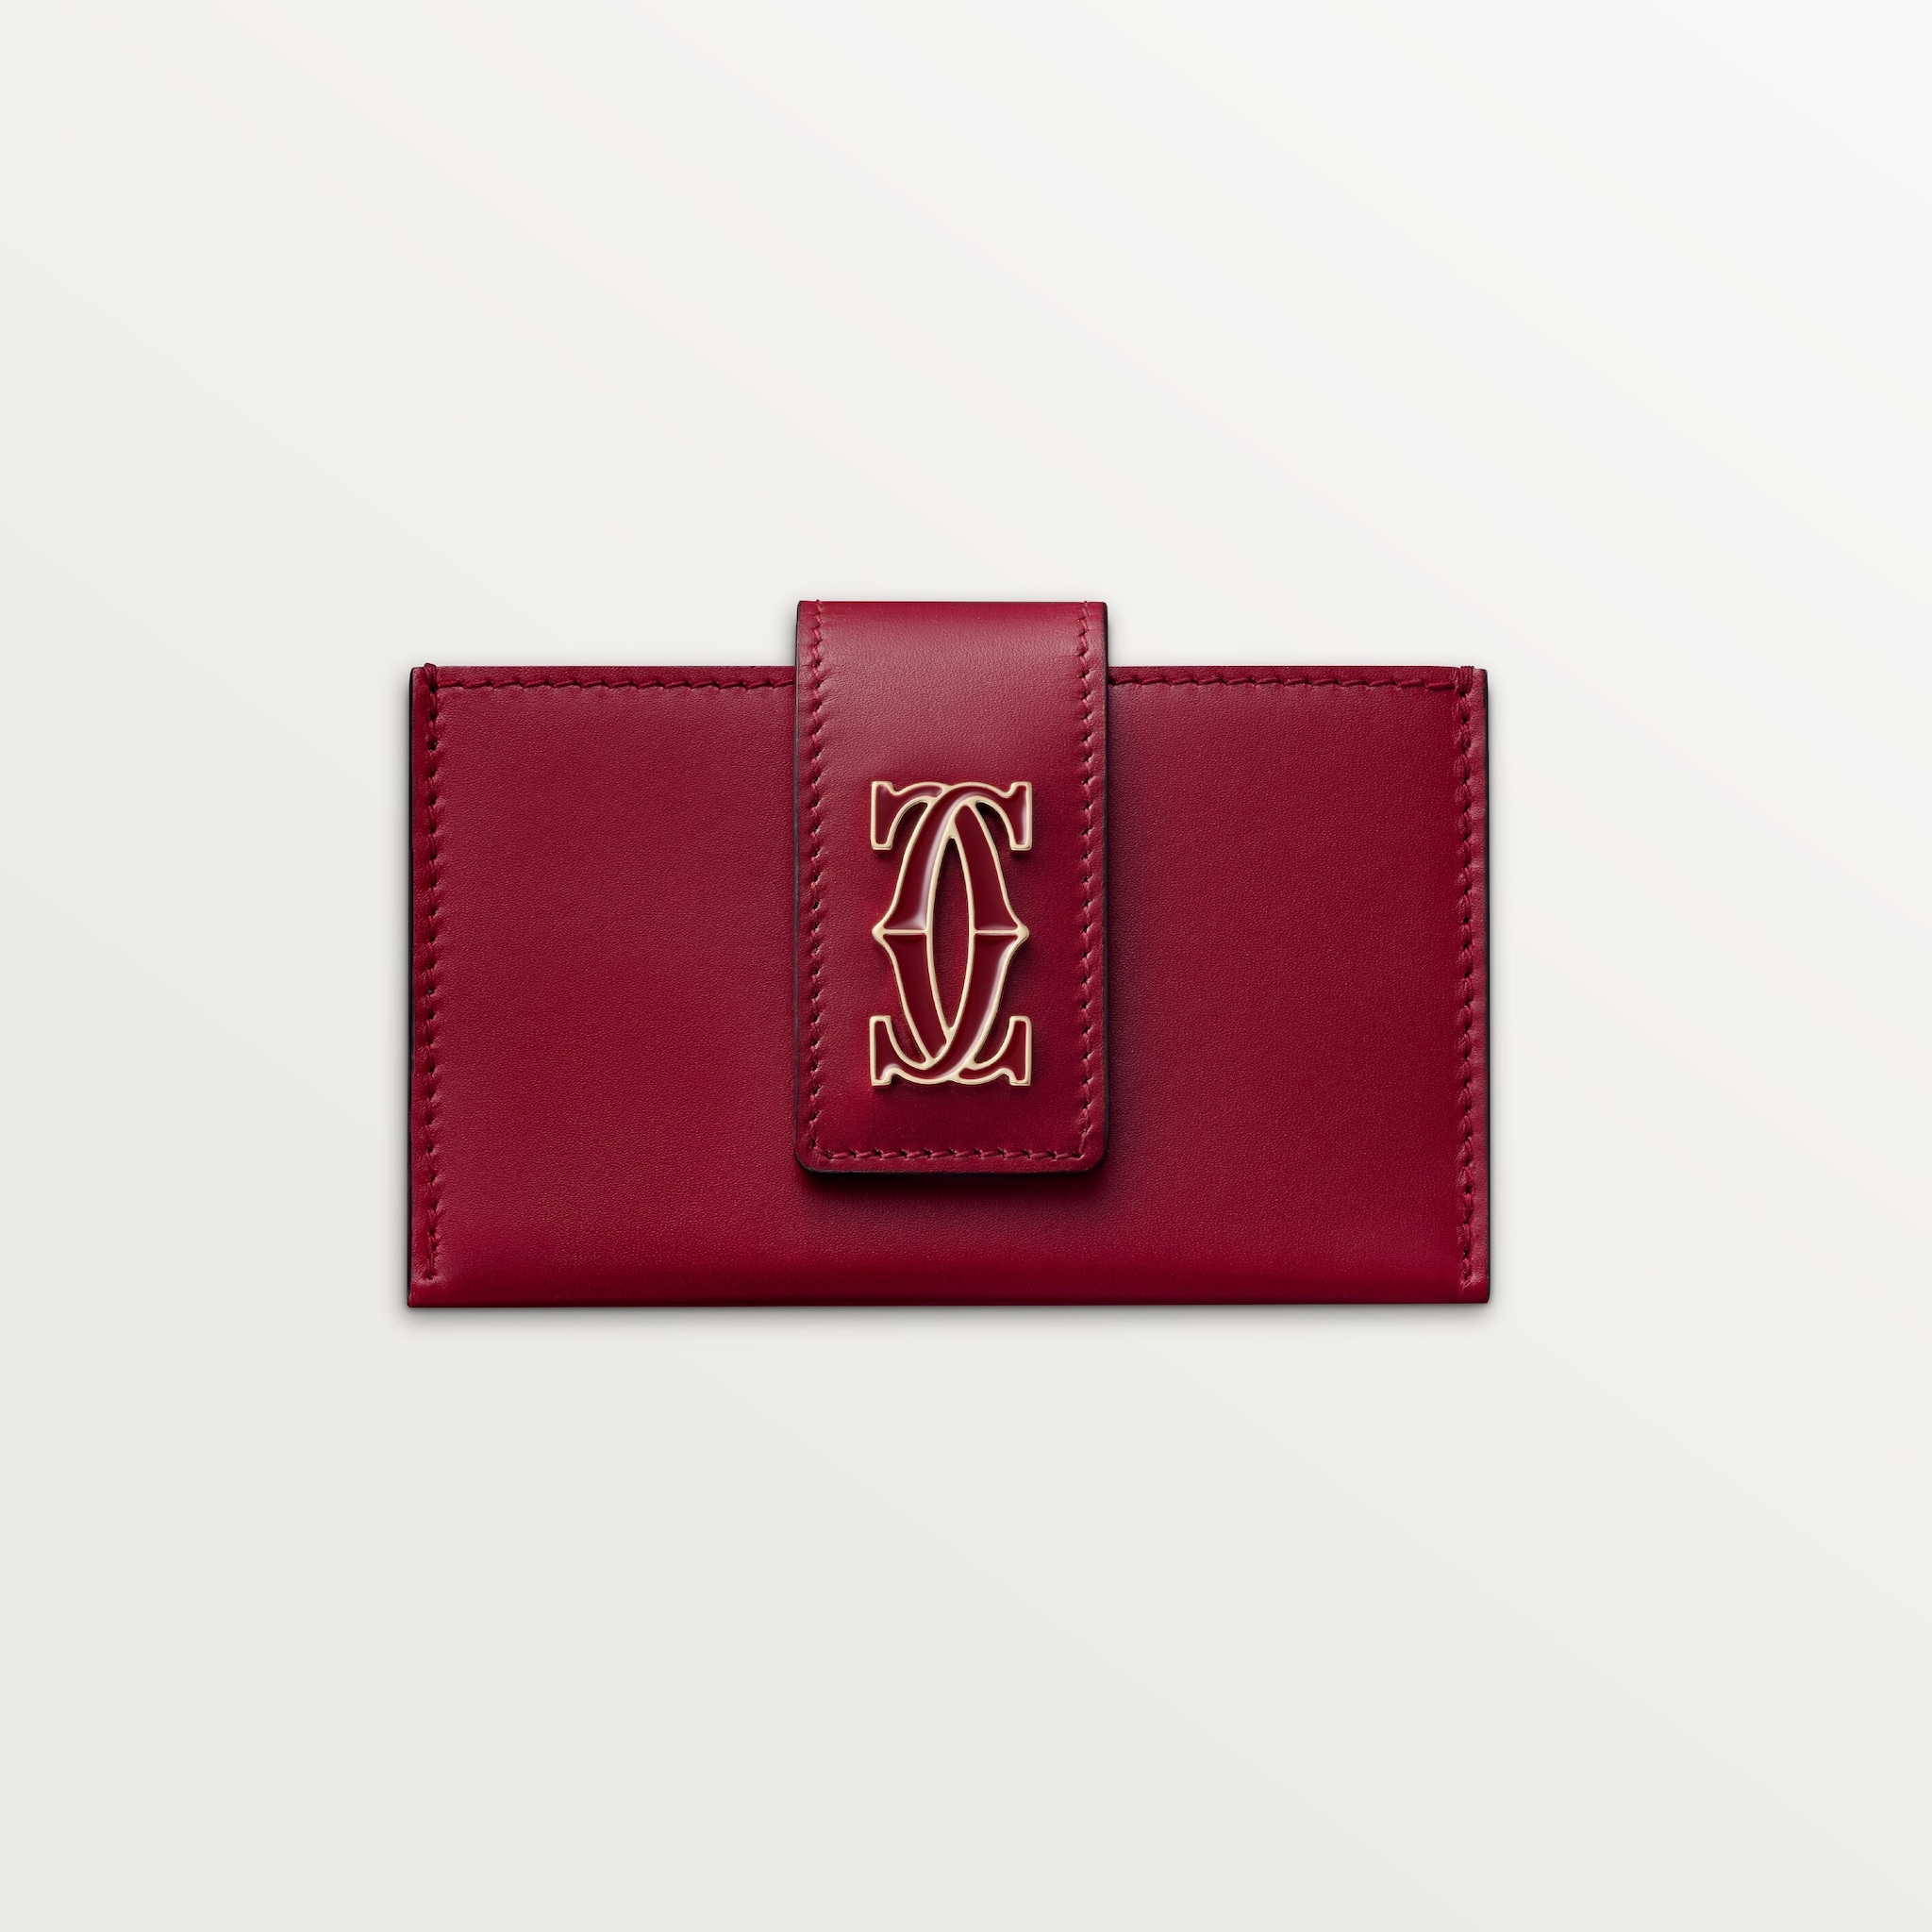 風琴式卡片夾，C de Cartier櫻桃紅色小牛皮，金色及櫻桃紅色琺瑯飾面